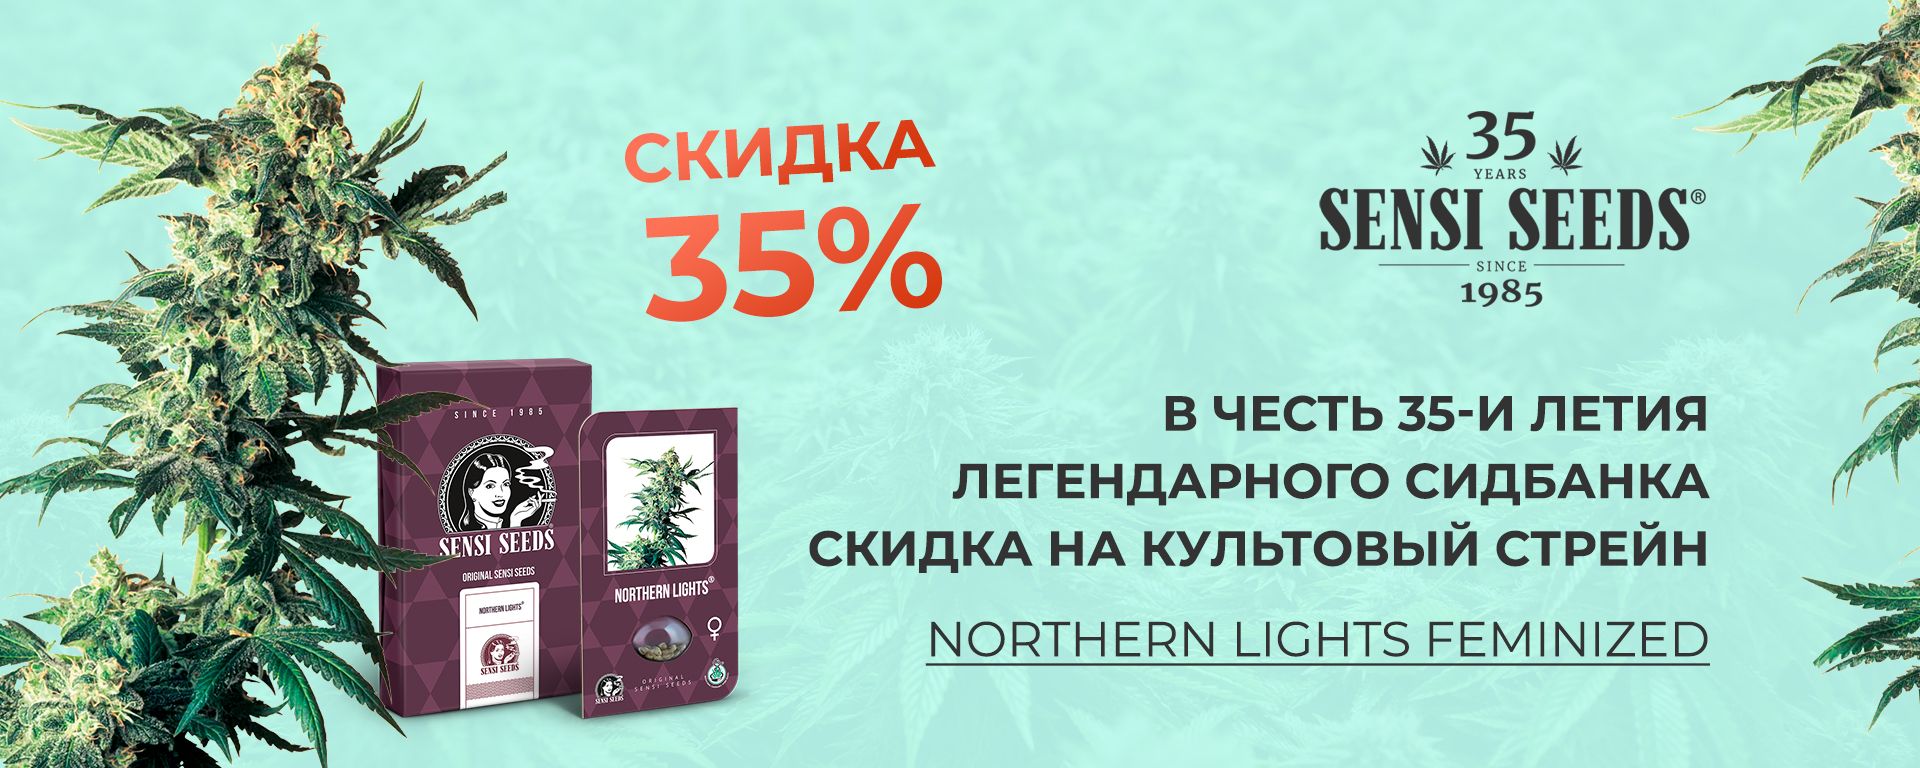 купить семена конопли марихуаны в украине